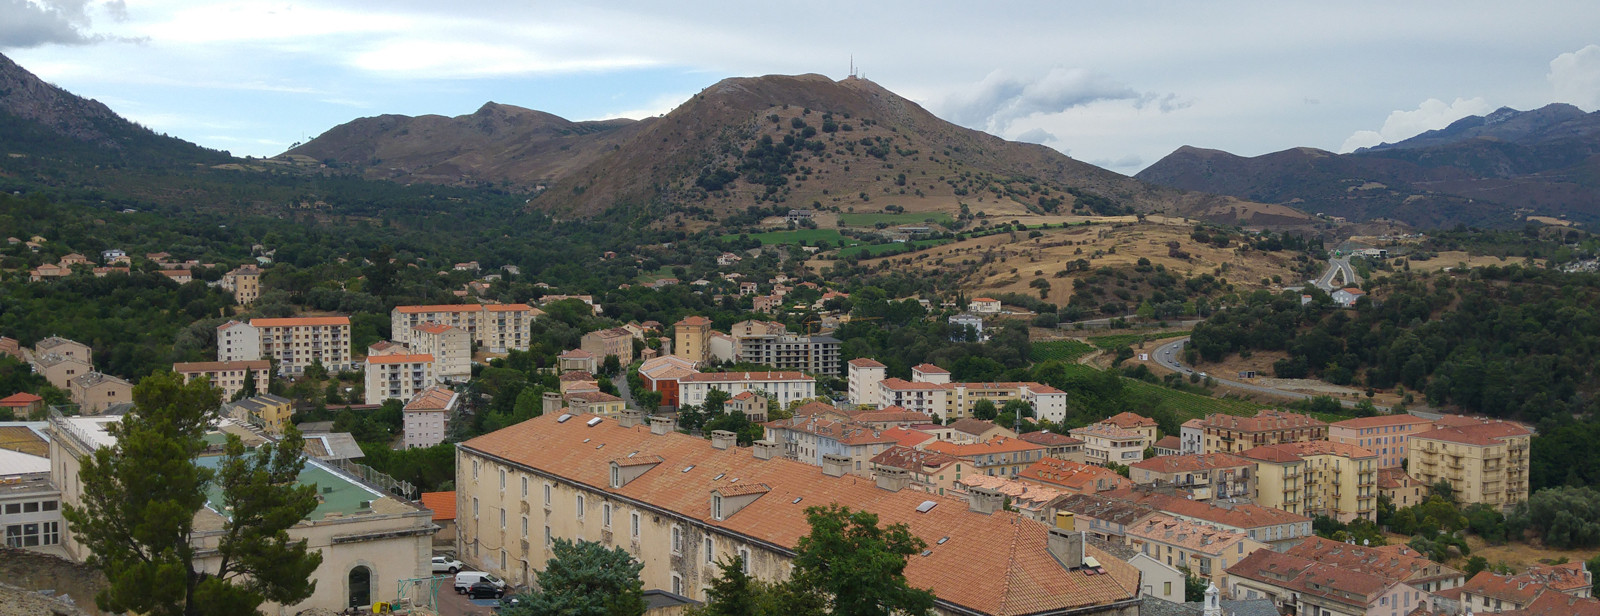 Die Stadt Corte in Korsika